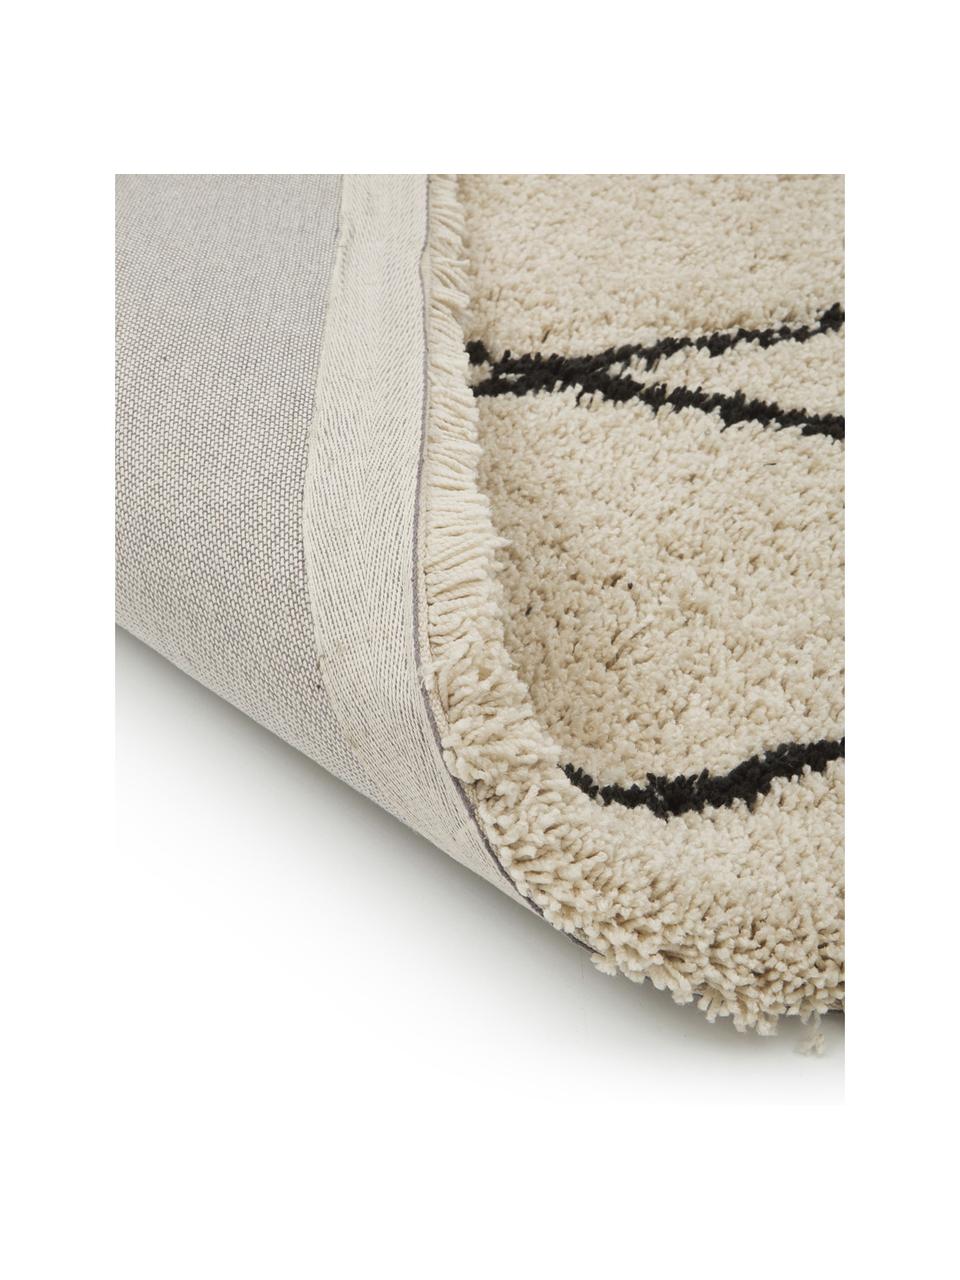 Flauschiger Hochflor-Teppich Naima mit Fransen, handgetuftet, Flor: 100% Polyester, Beige, Schwarz, B 200 x L 300 cm (Größe L)